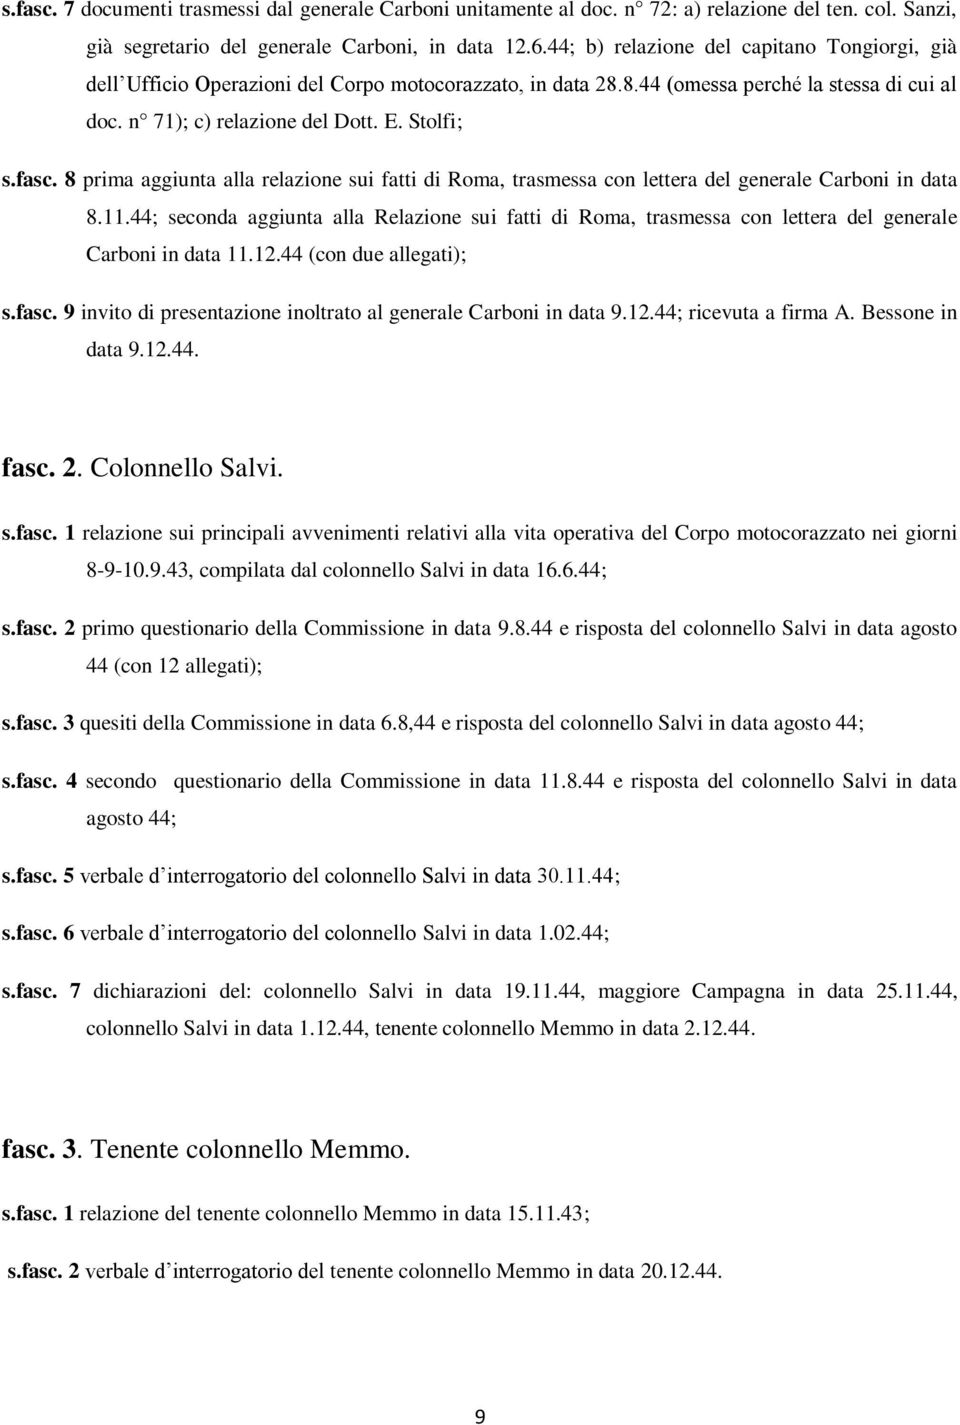 8 prima aggiunta alla relazione sui fatti di Roma, trasmessa con lettera del generale Carboni in data 8.11.